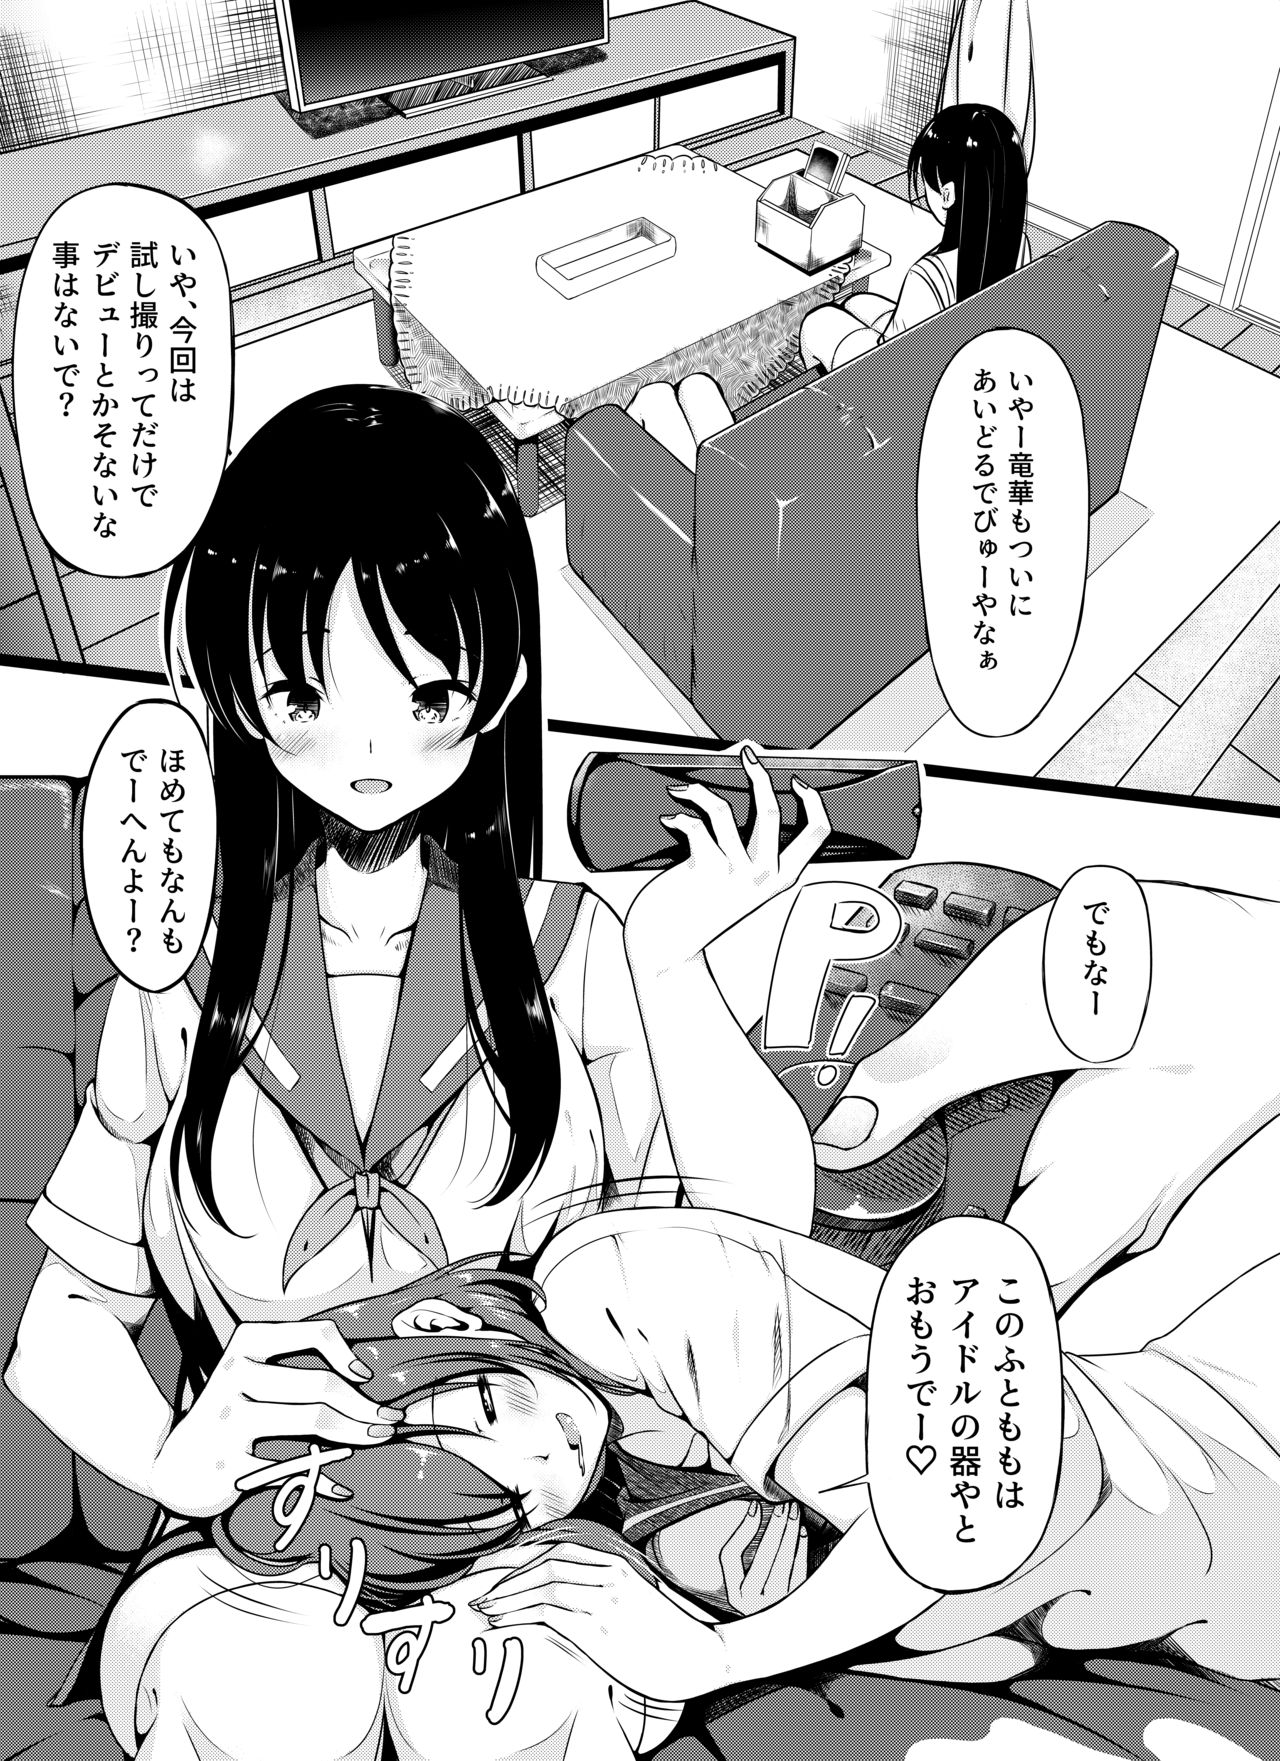 [Miso Oden] Shimizudani Ryuuka no Mijikai Ero Manga (Saki) page 1 full